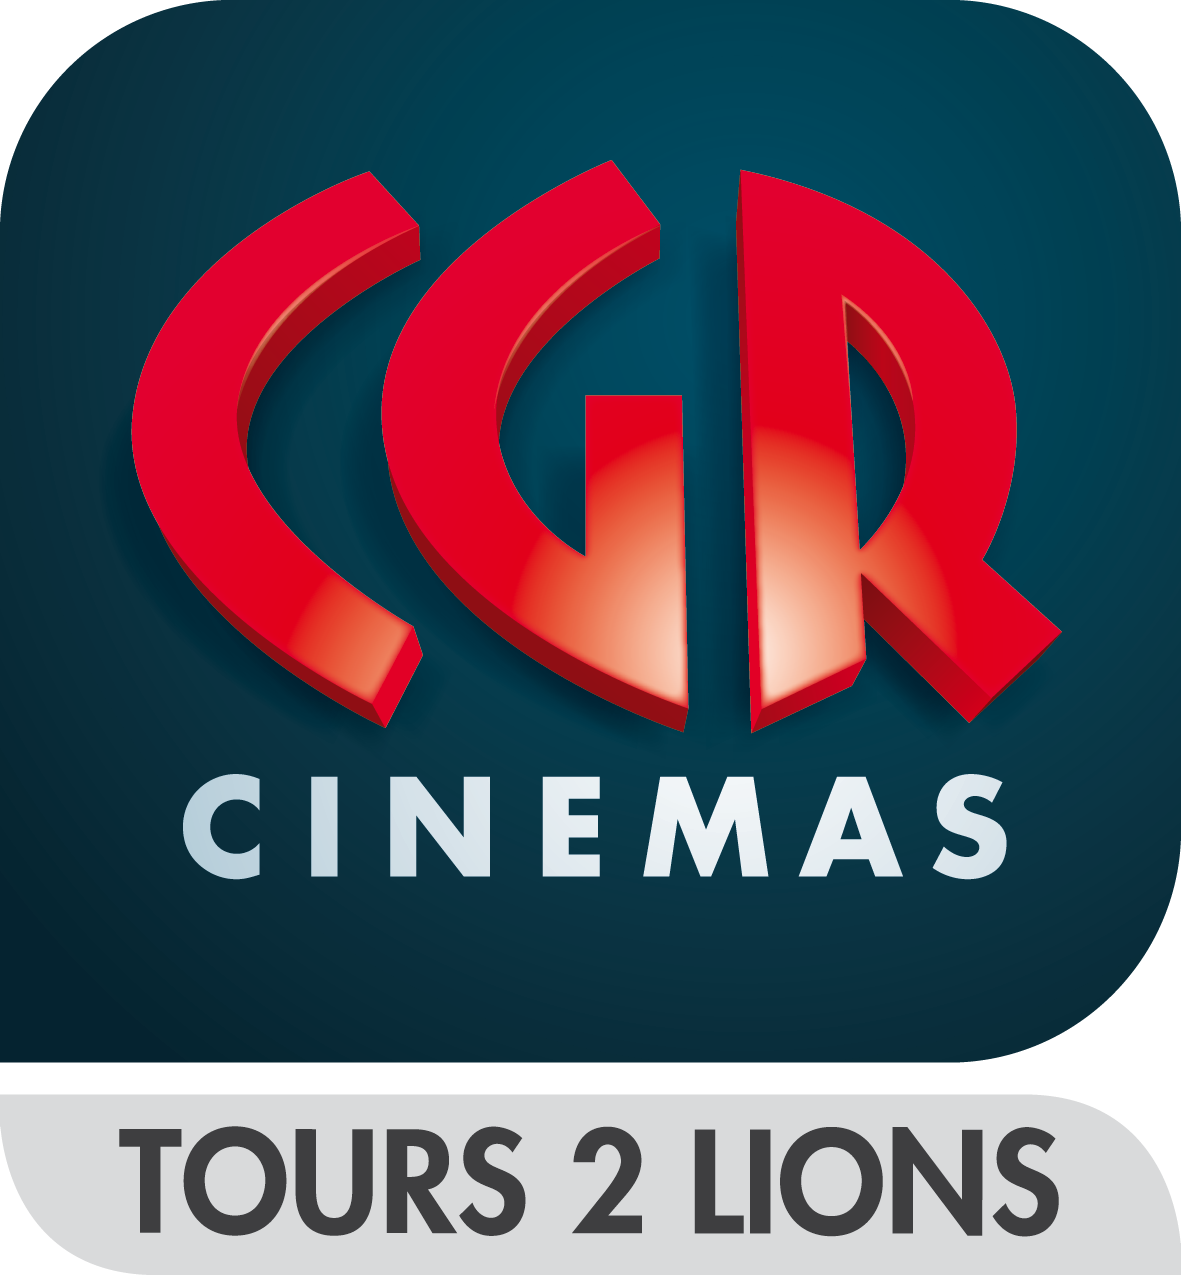 2 lions tours cgr